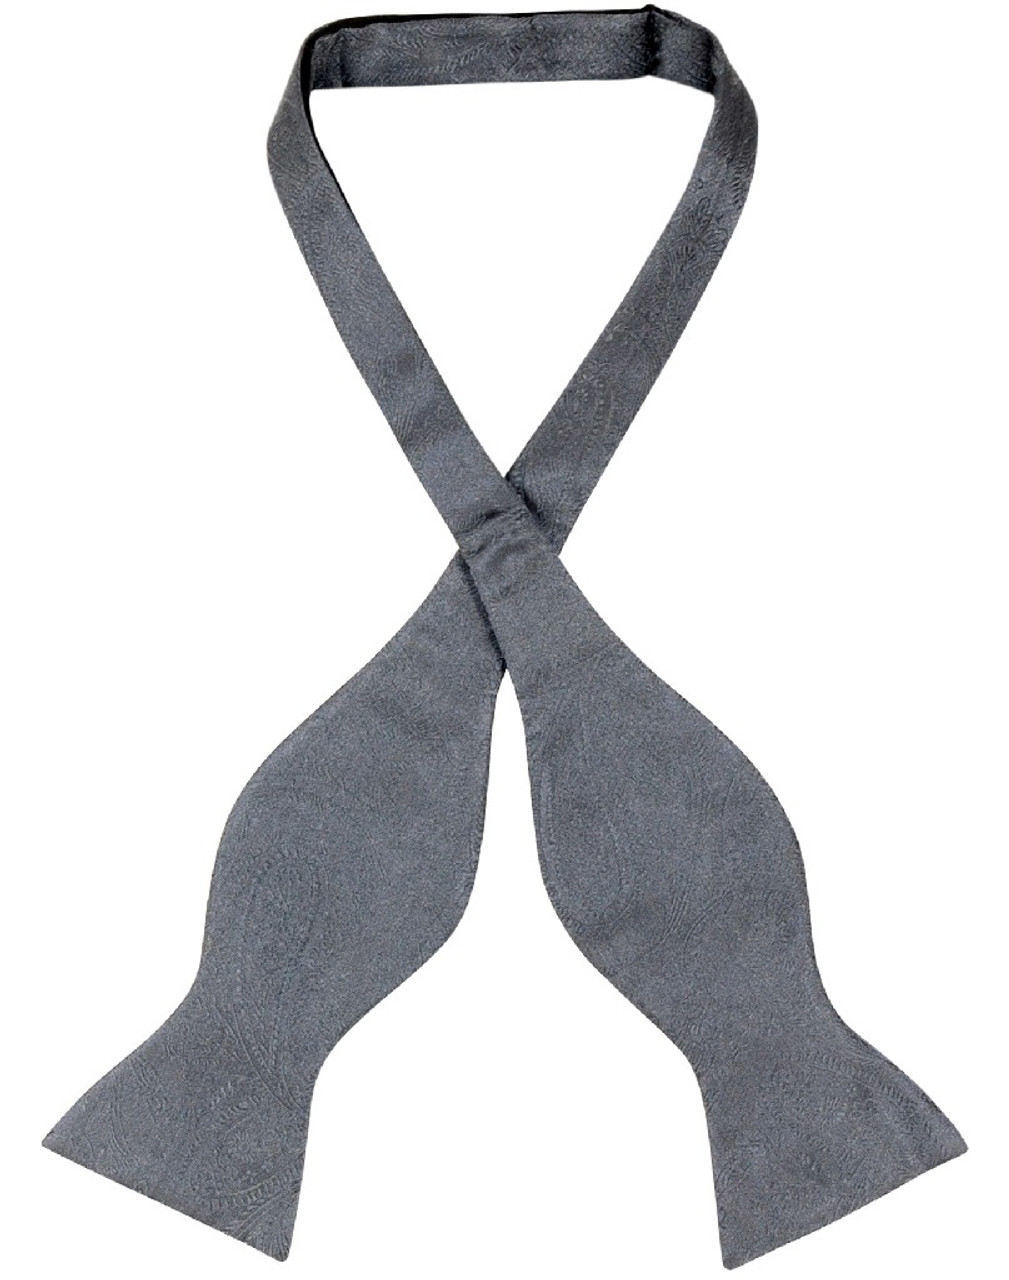 Vesuvio Napoli Self Tie Bow Tie Charcoal Grey Paisley Mens BowTie